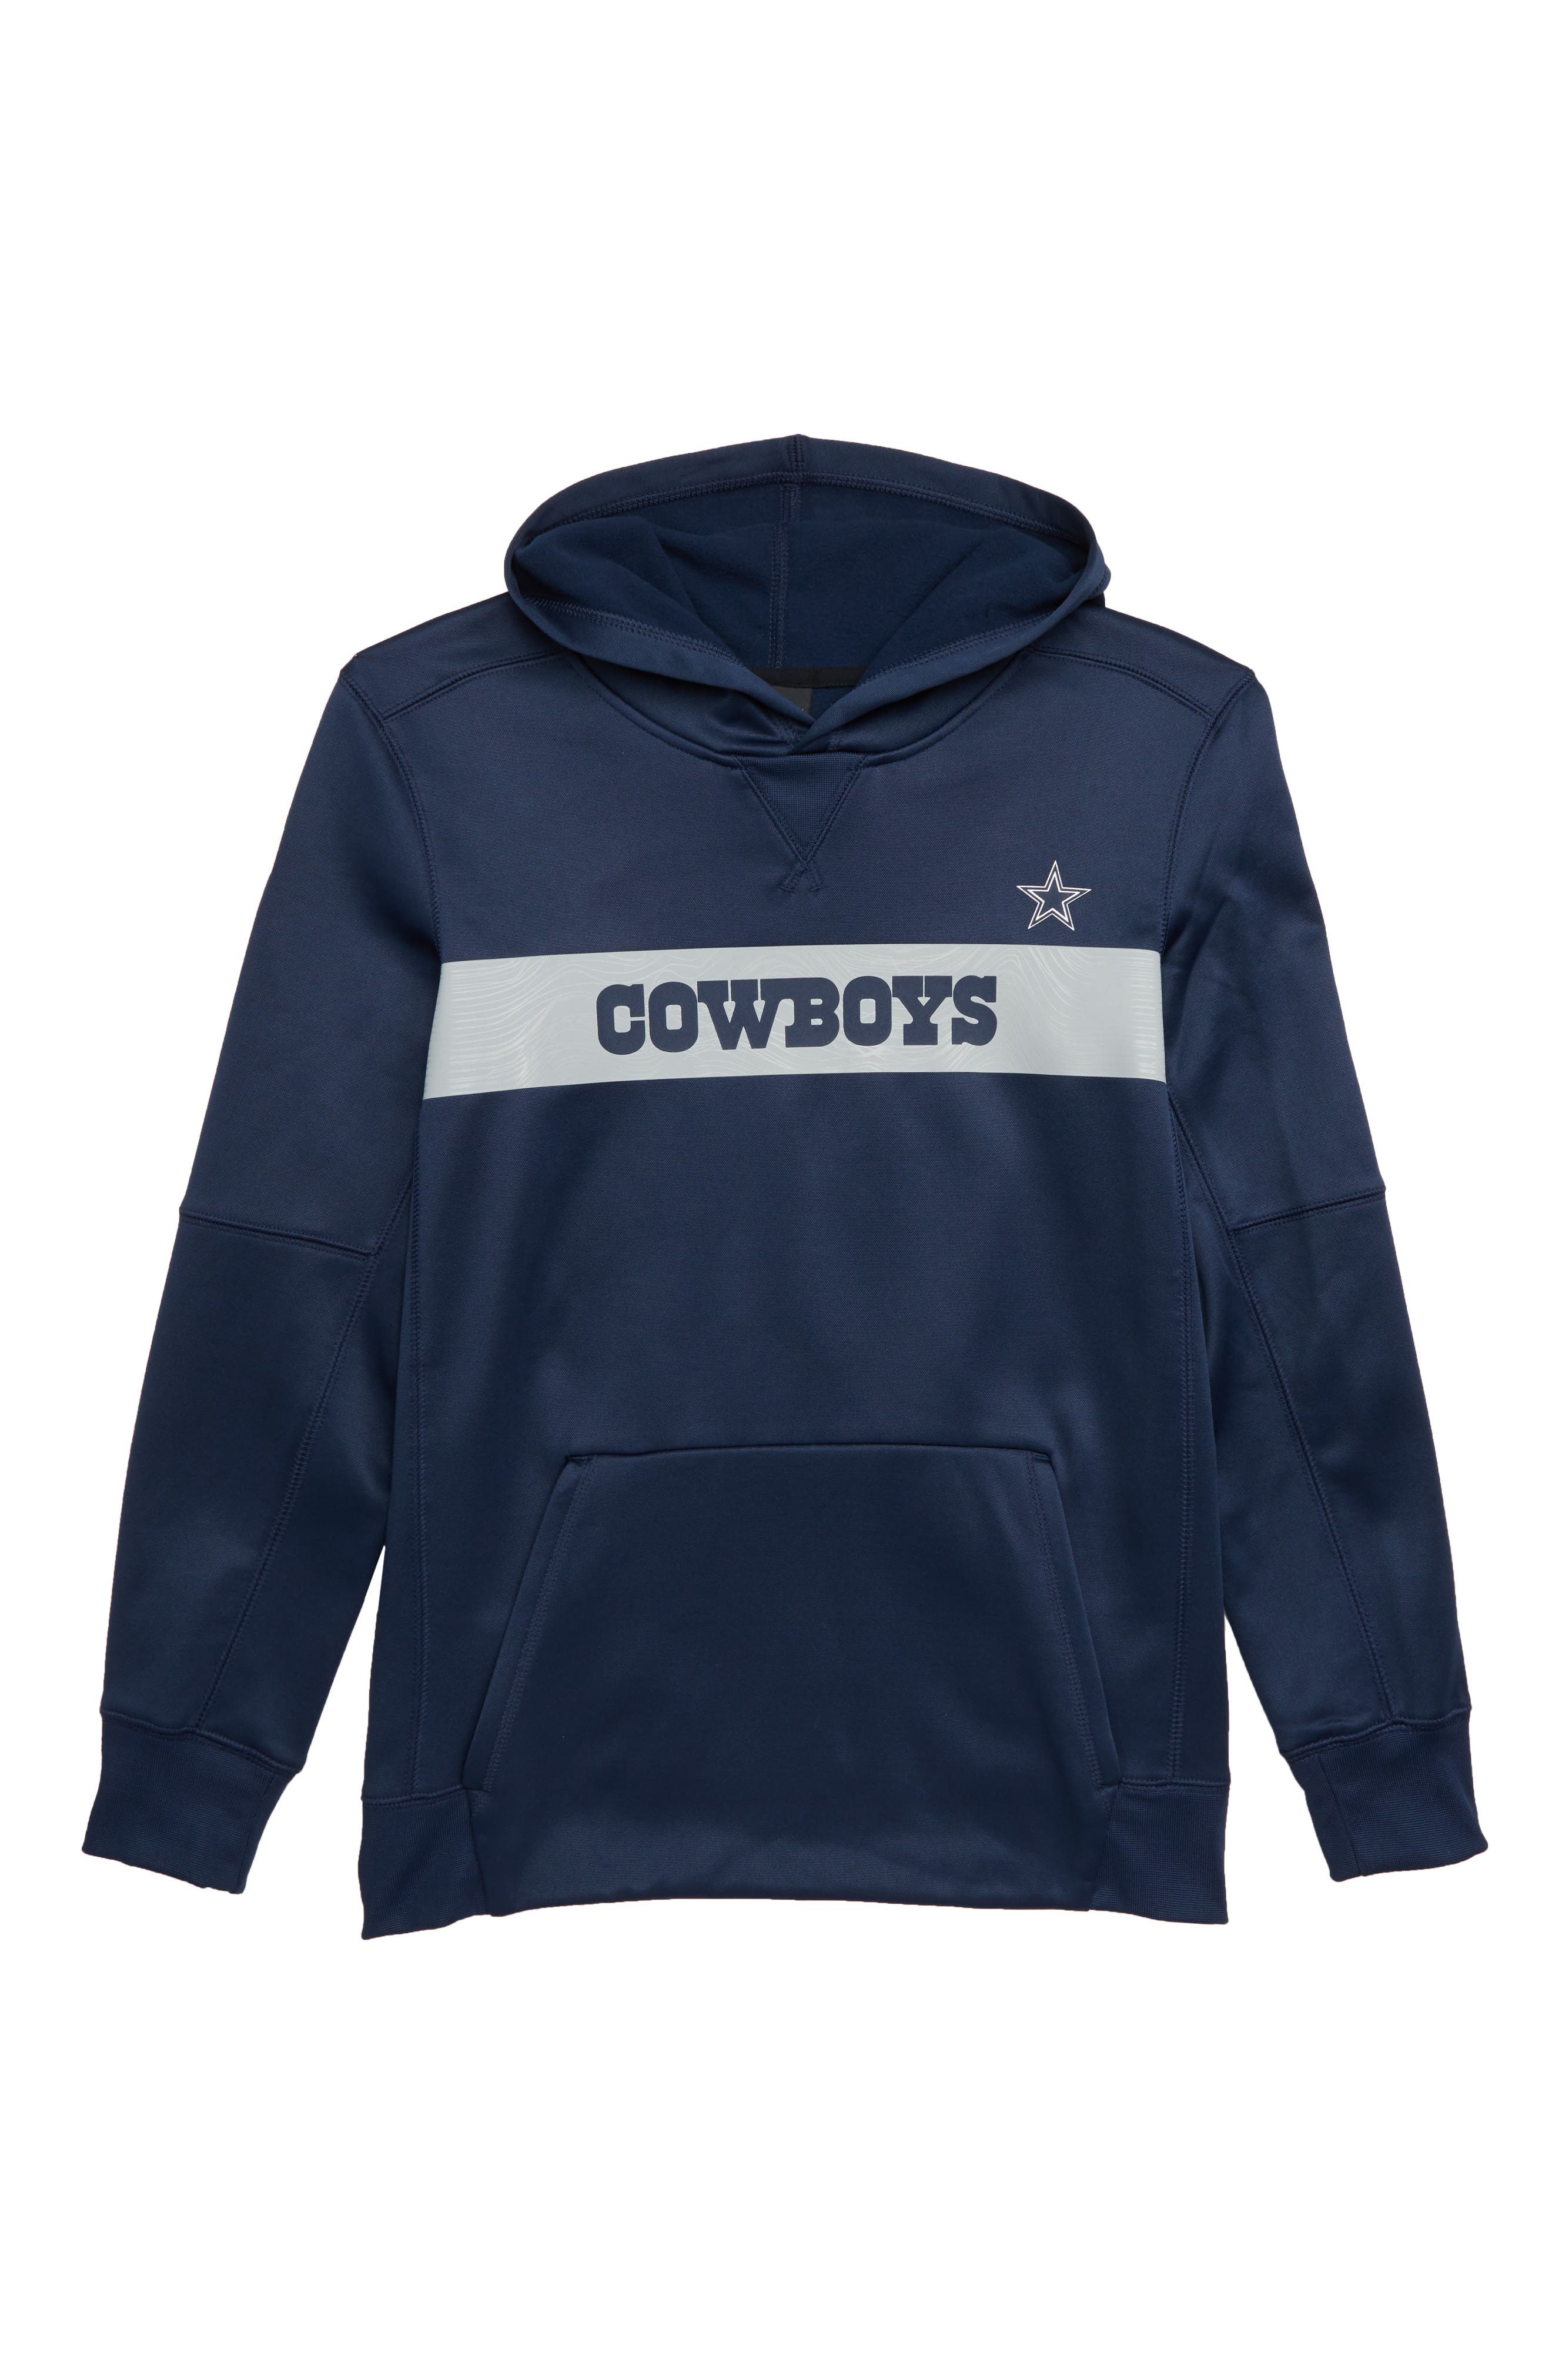 dallas cowboys crop top hoodie